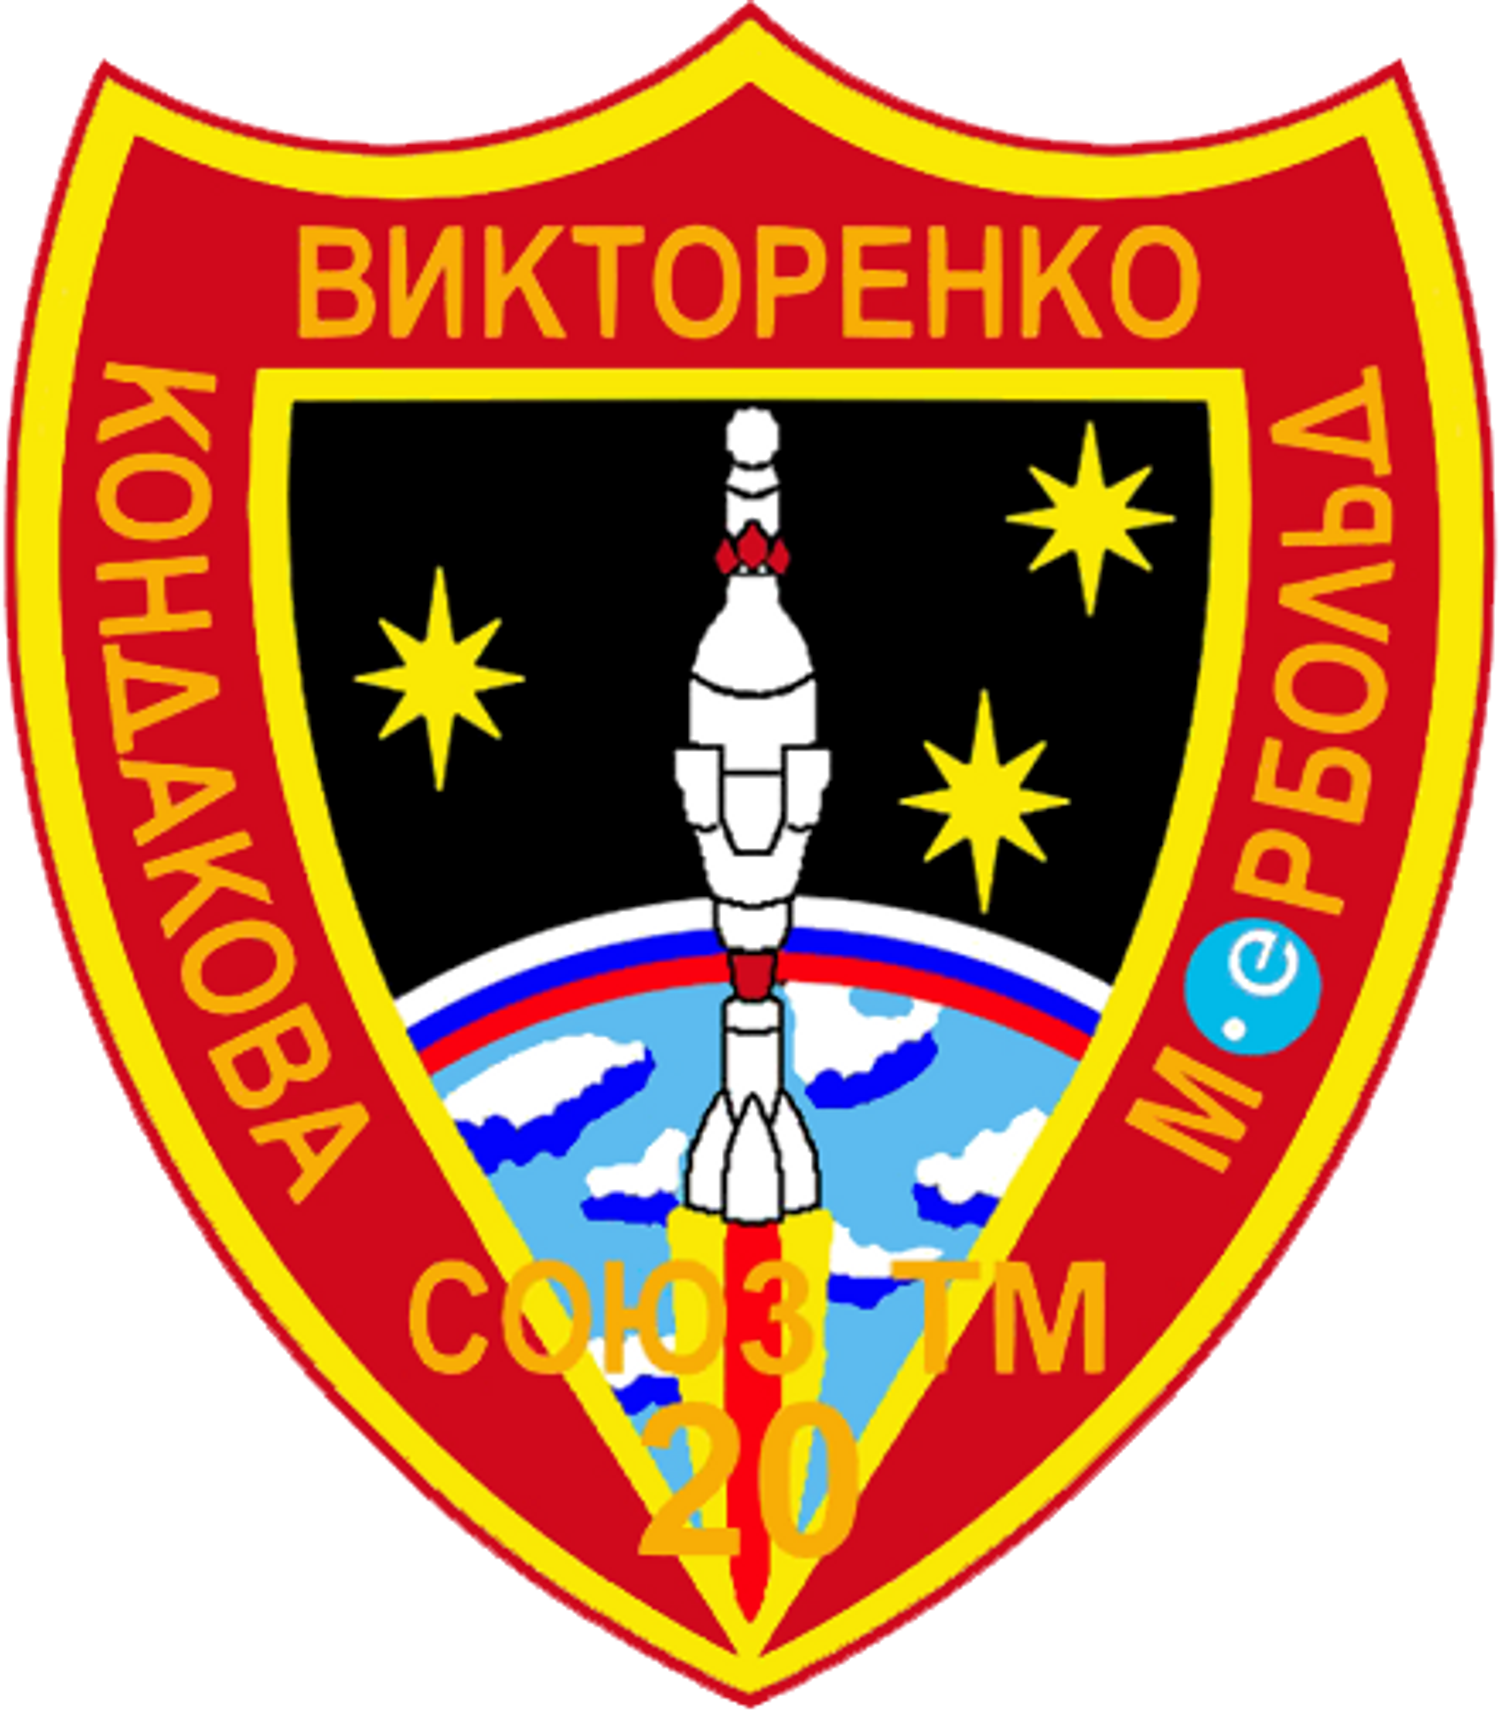 Soyuz TM-20